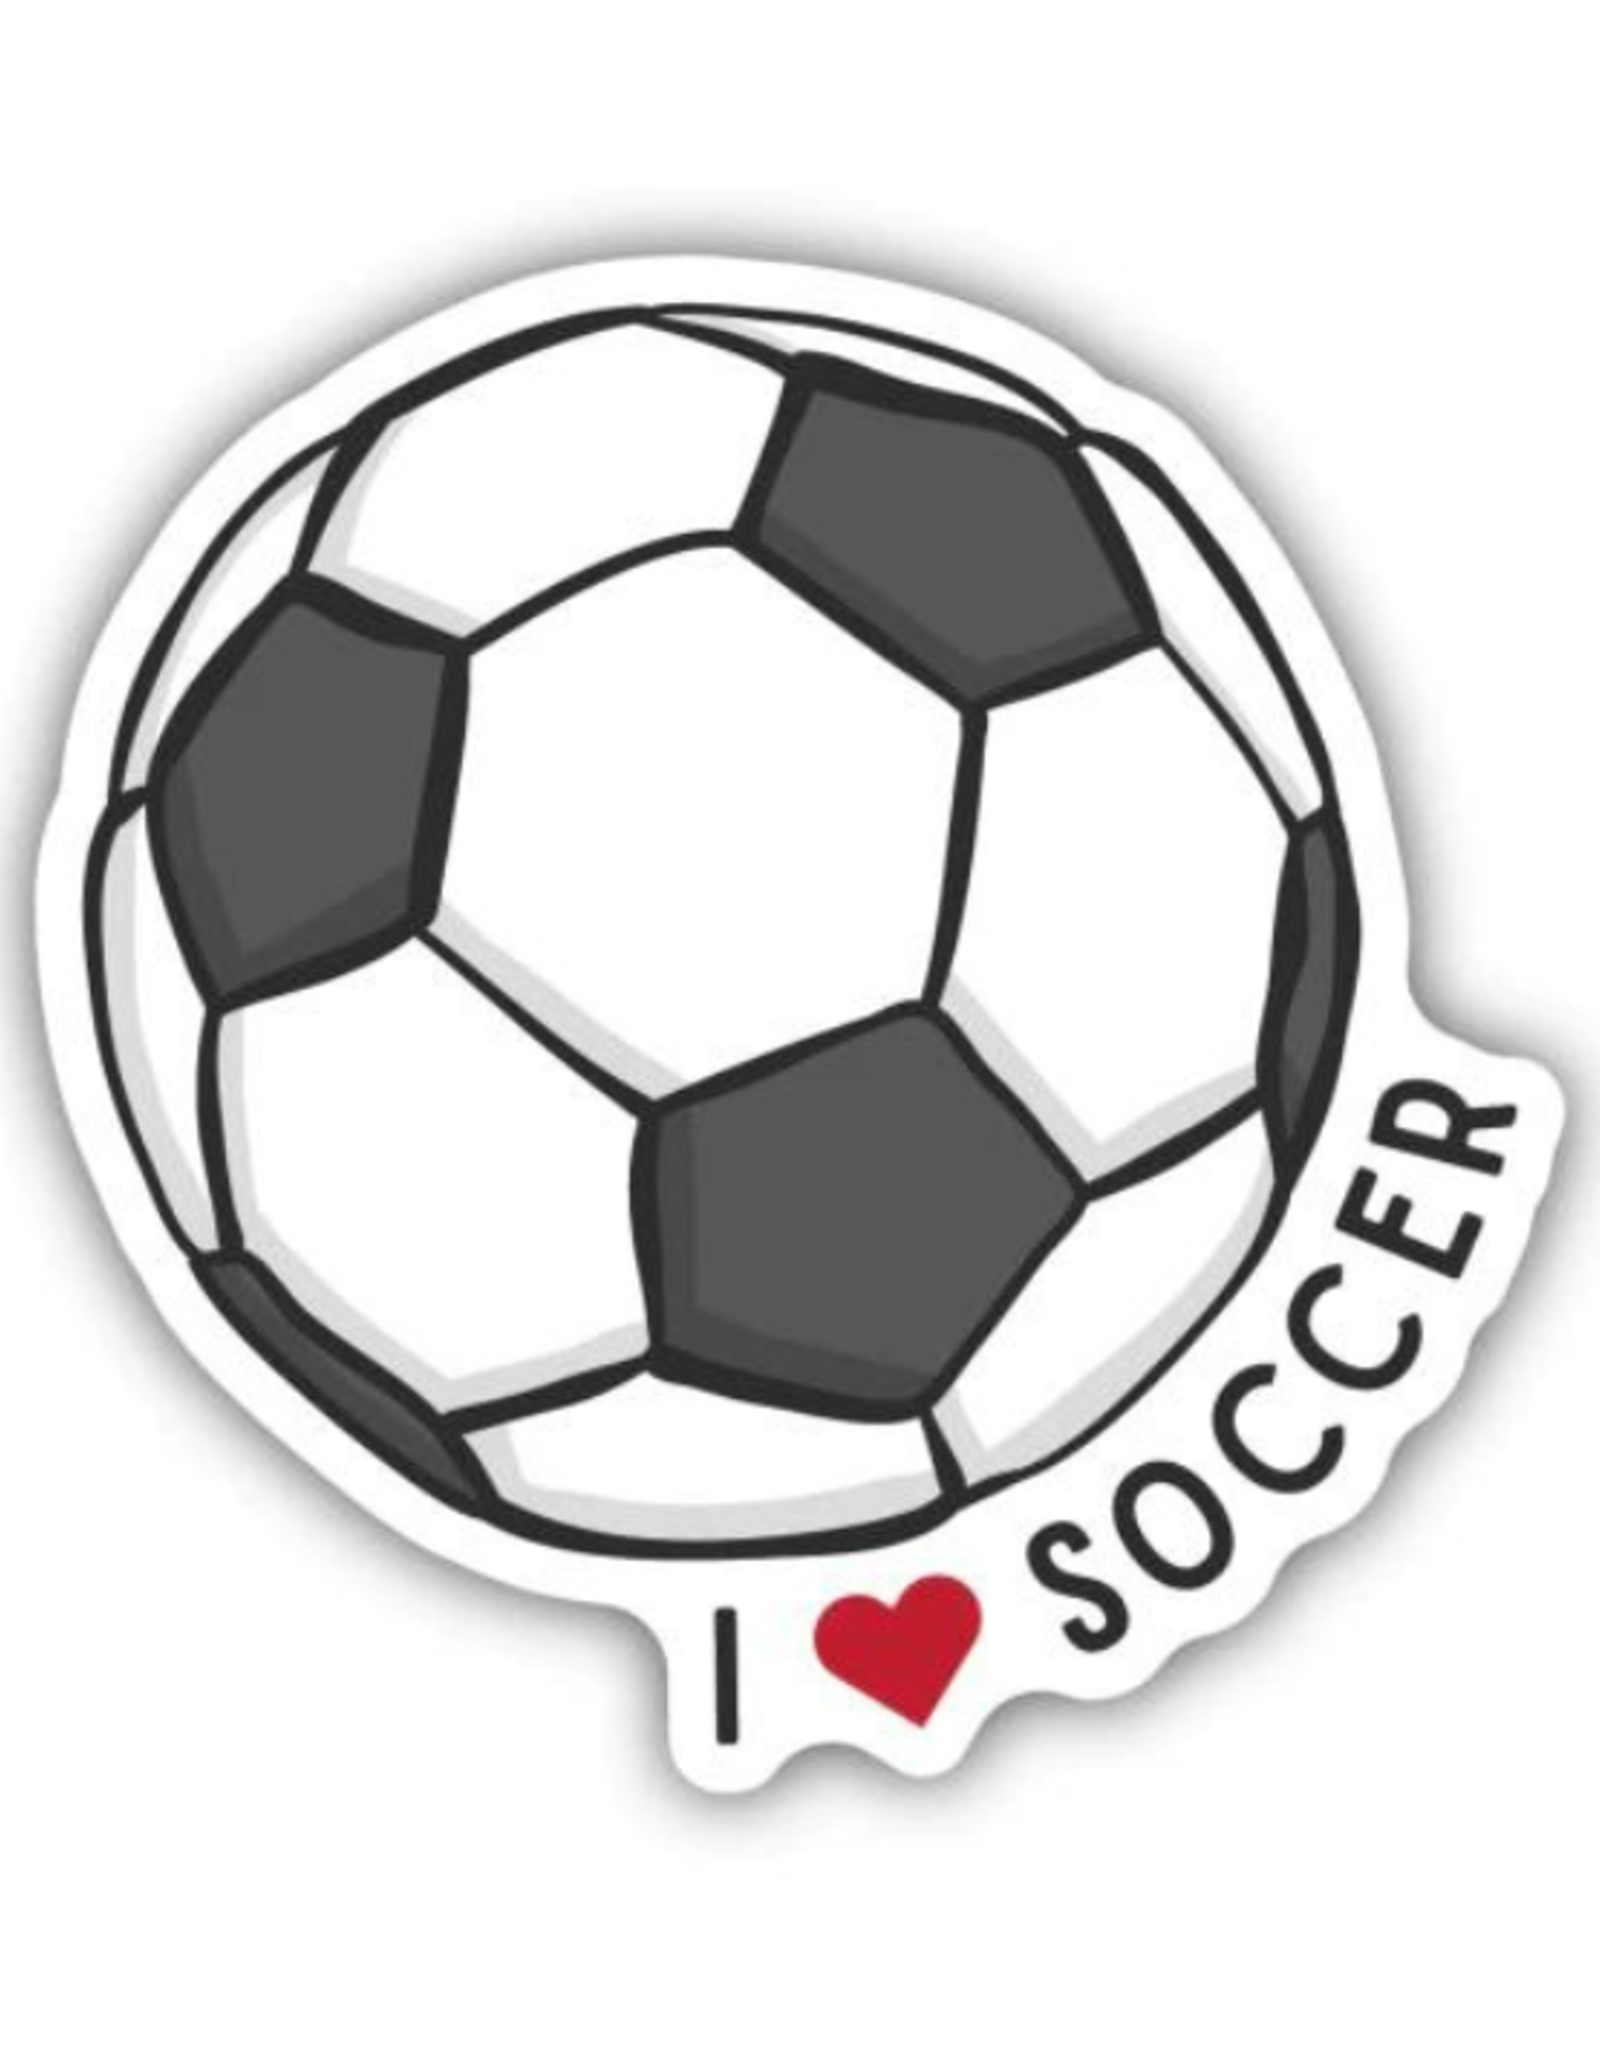 Stickers Northwest Inc. Stickers Northwest Inc. - I Love Soccer Ball Sticker